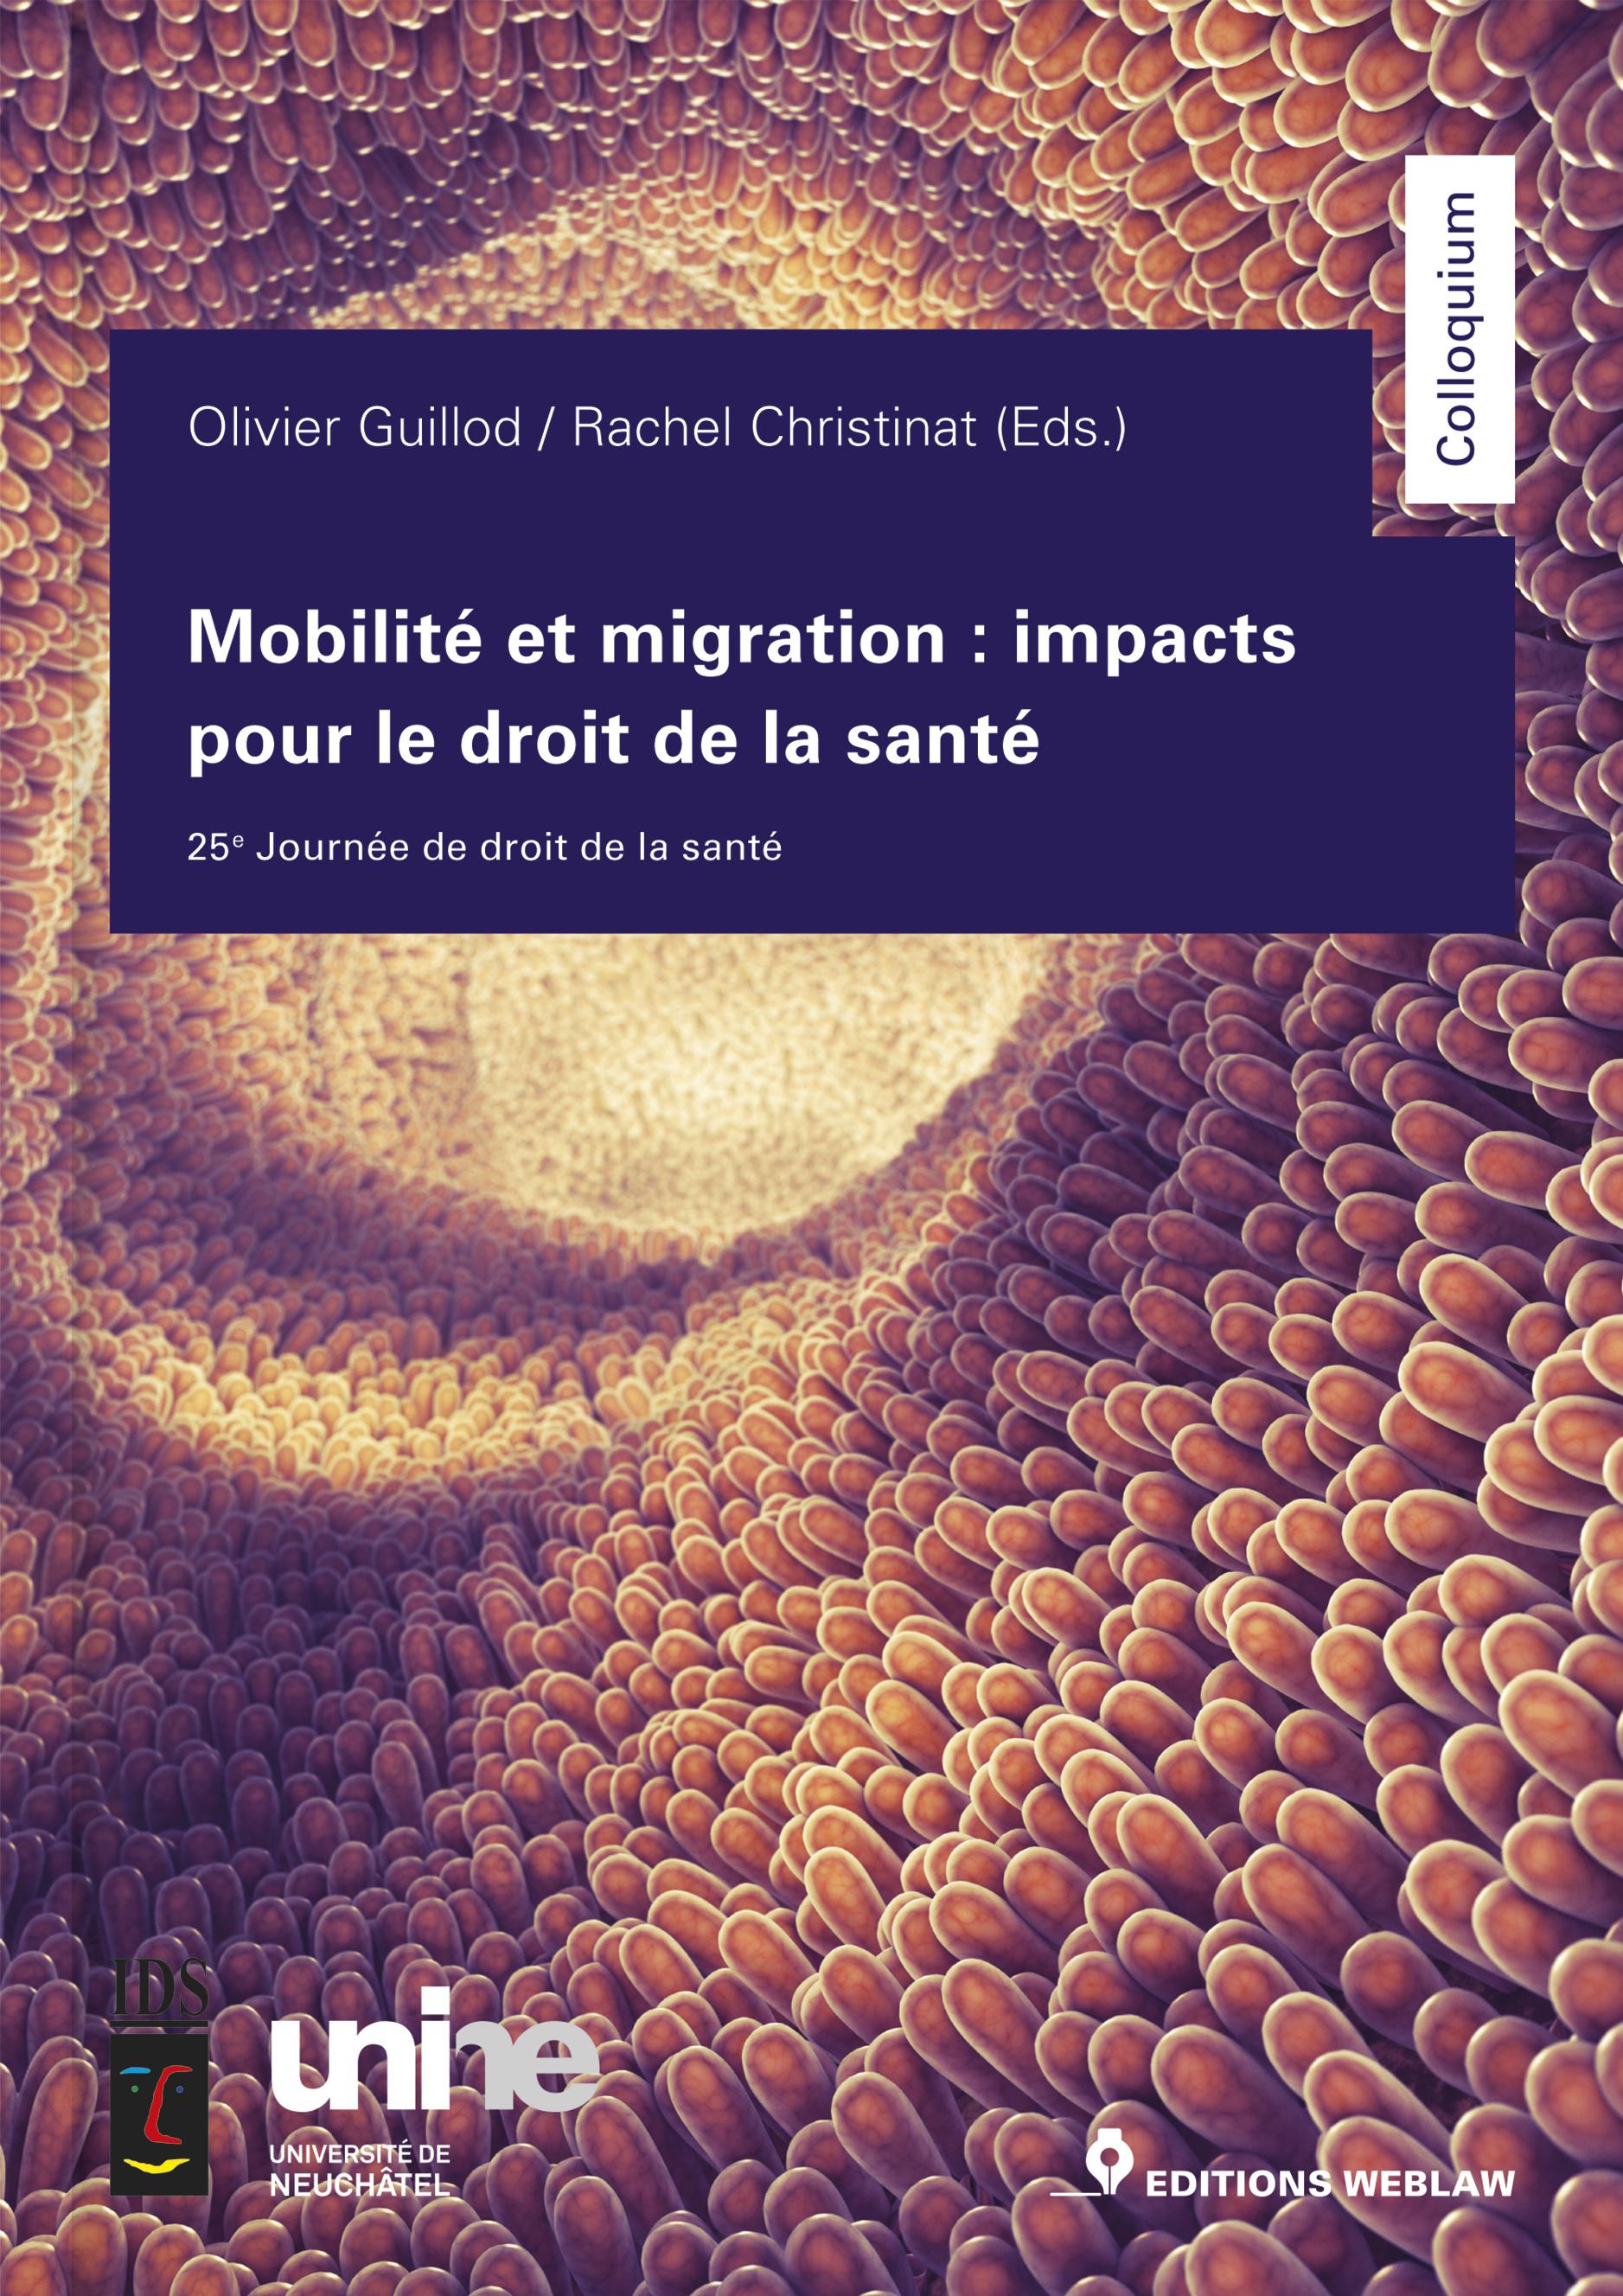 Neu bei Editions Weblaw: Olivier Guillod / Rachel Christinat (Eds.), Mobilité et migration : impacts pour le droit de la santé